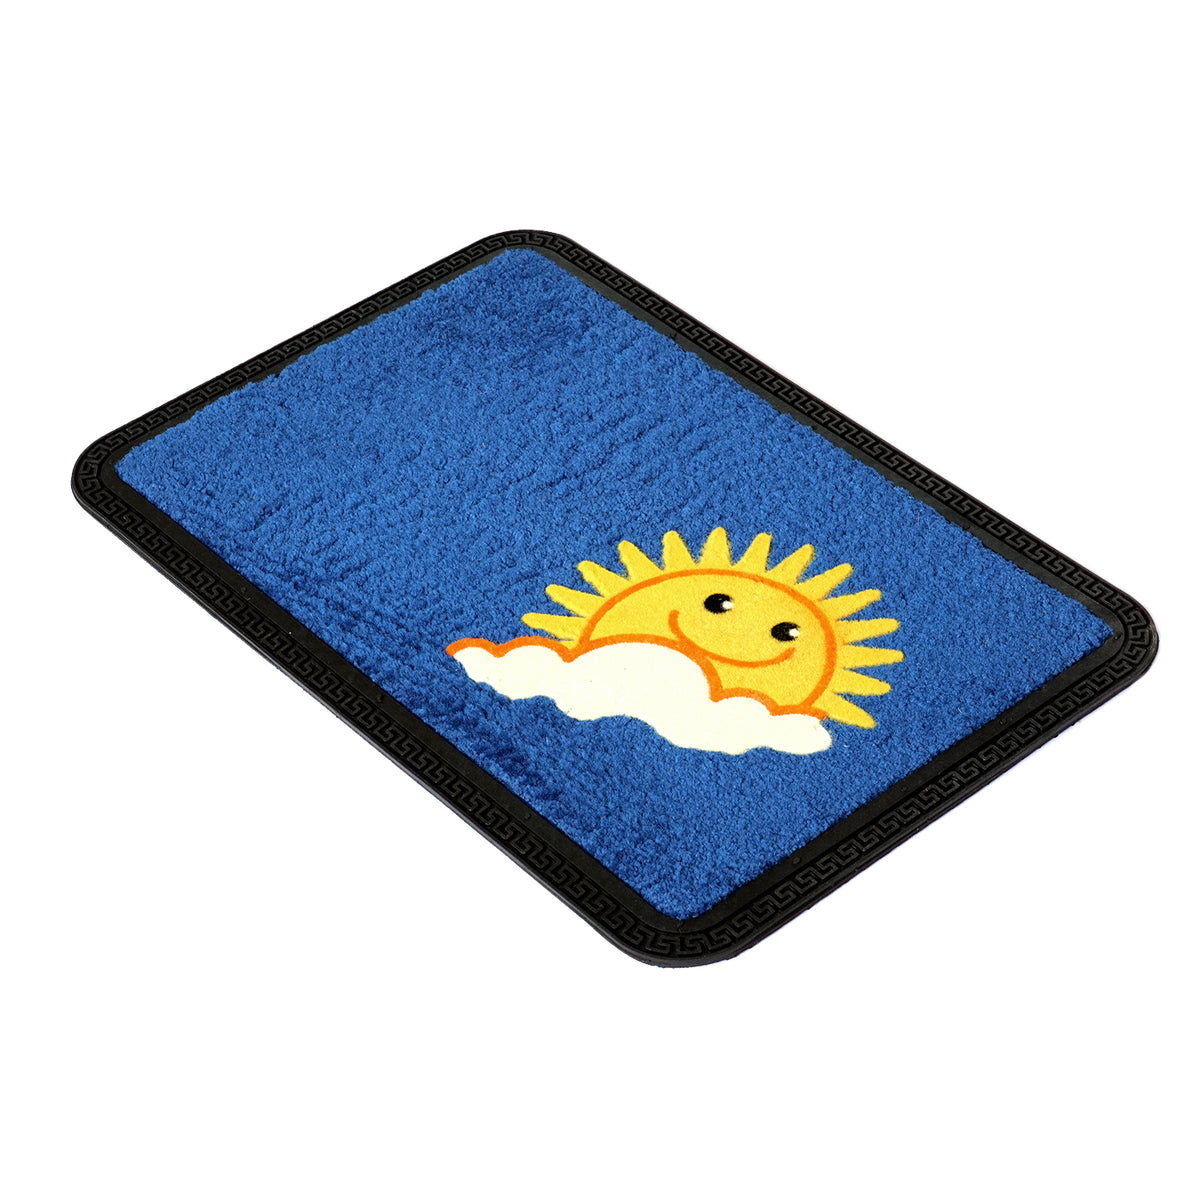 Happy Sun Design Soft All-Purpose Blue Bathroom Anti-Slip Door Mat 